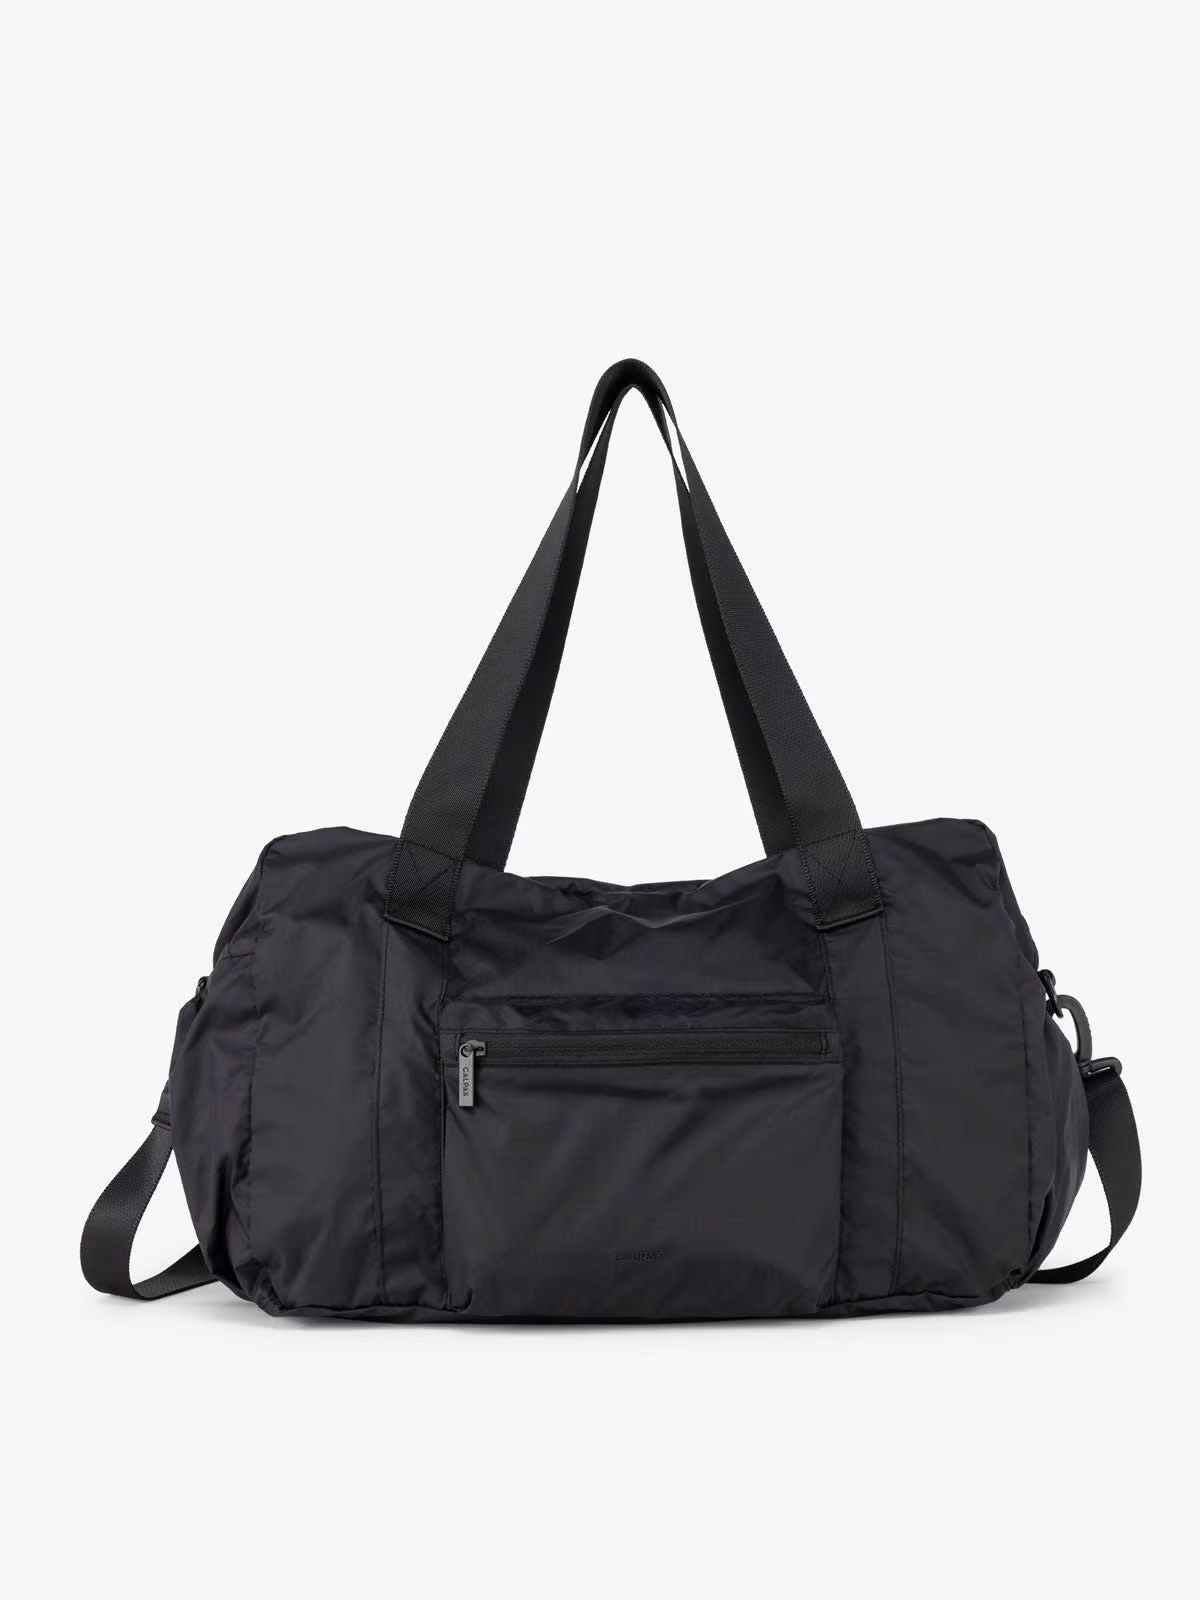 Compakt Duffel Bag | CALPAK | CALPAK Travel